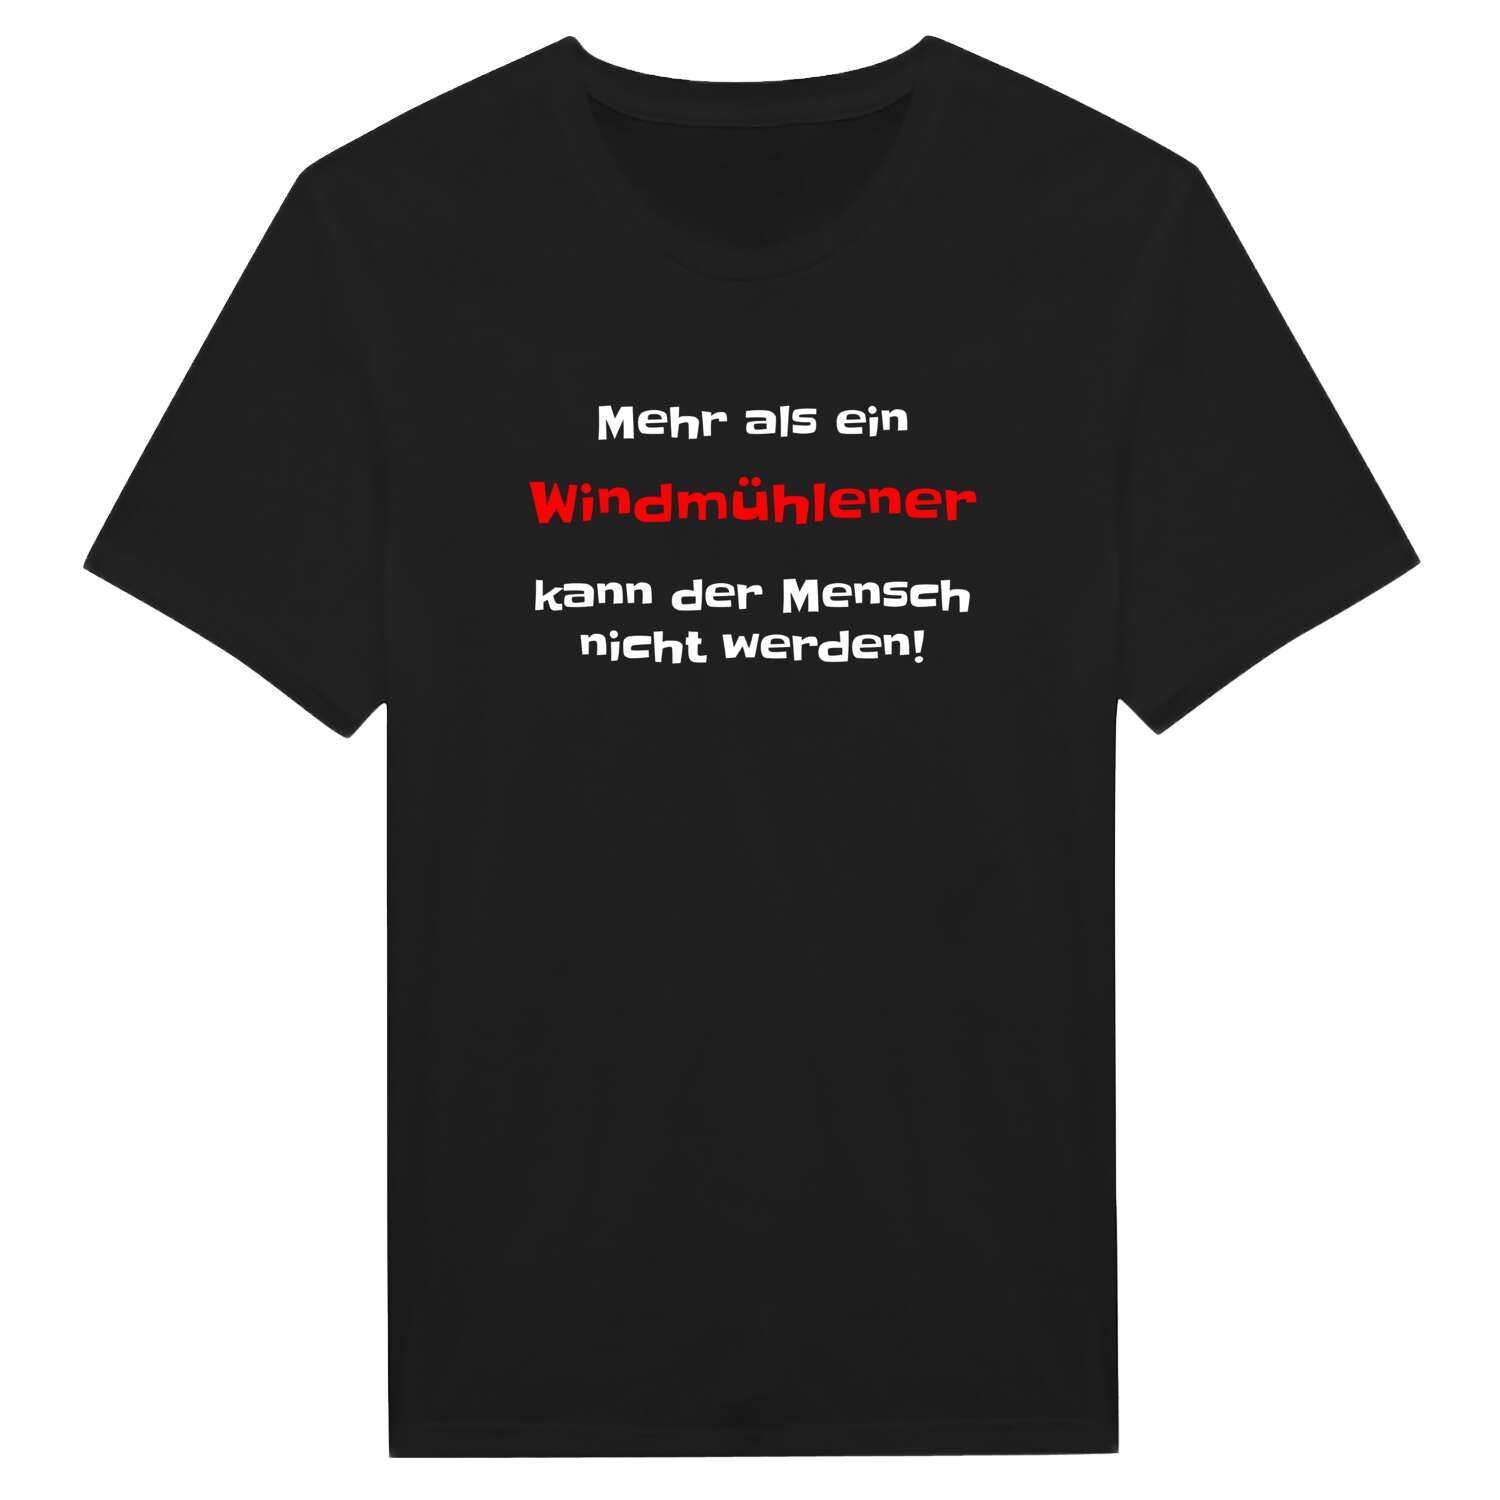 Windmühle T-Shirt »Mehr als ein«